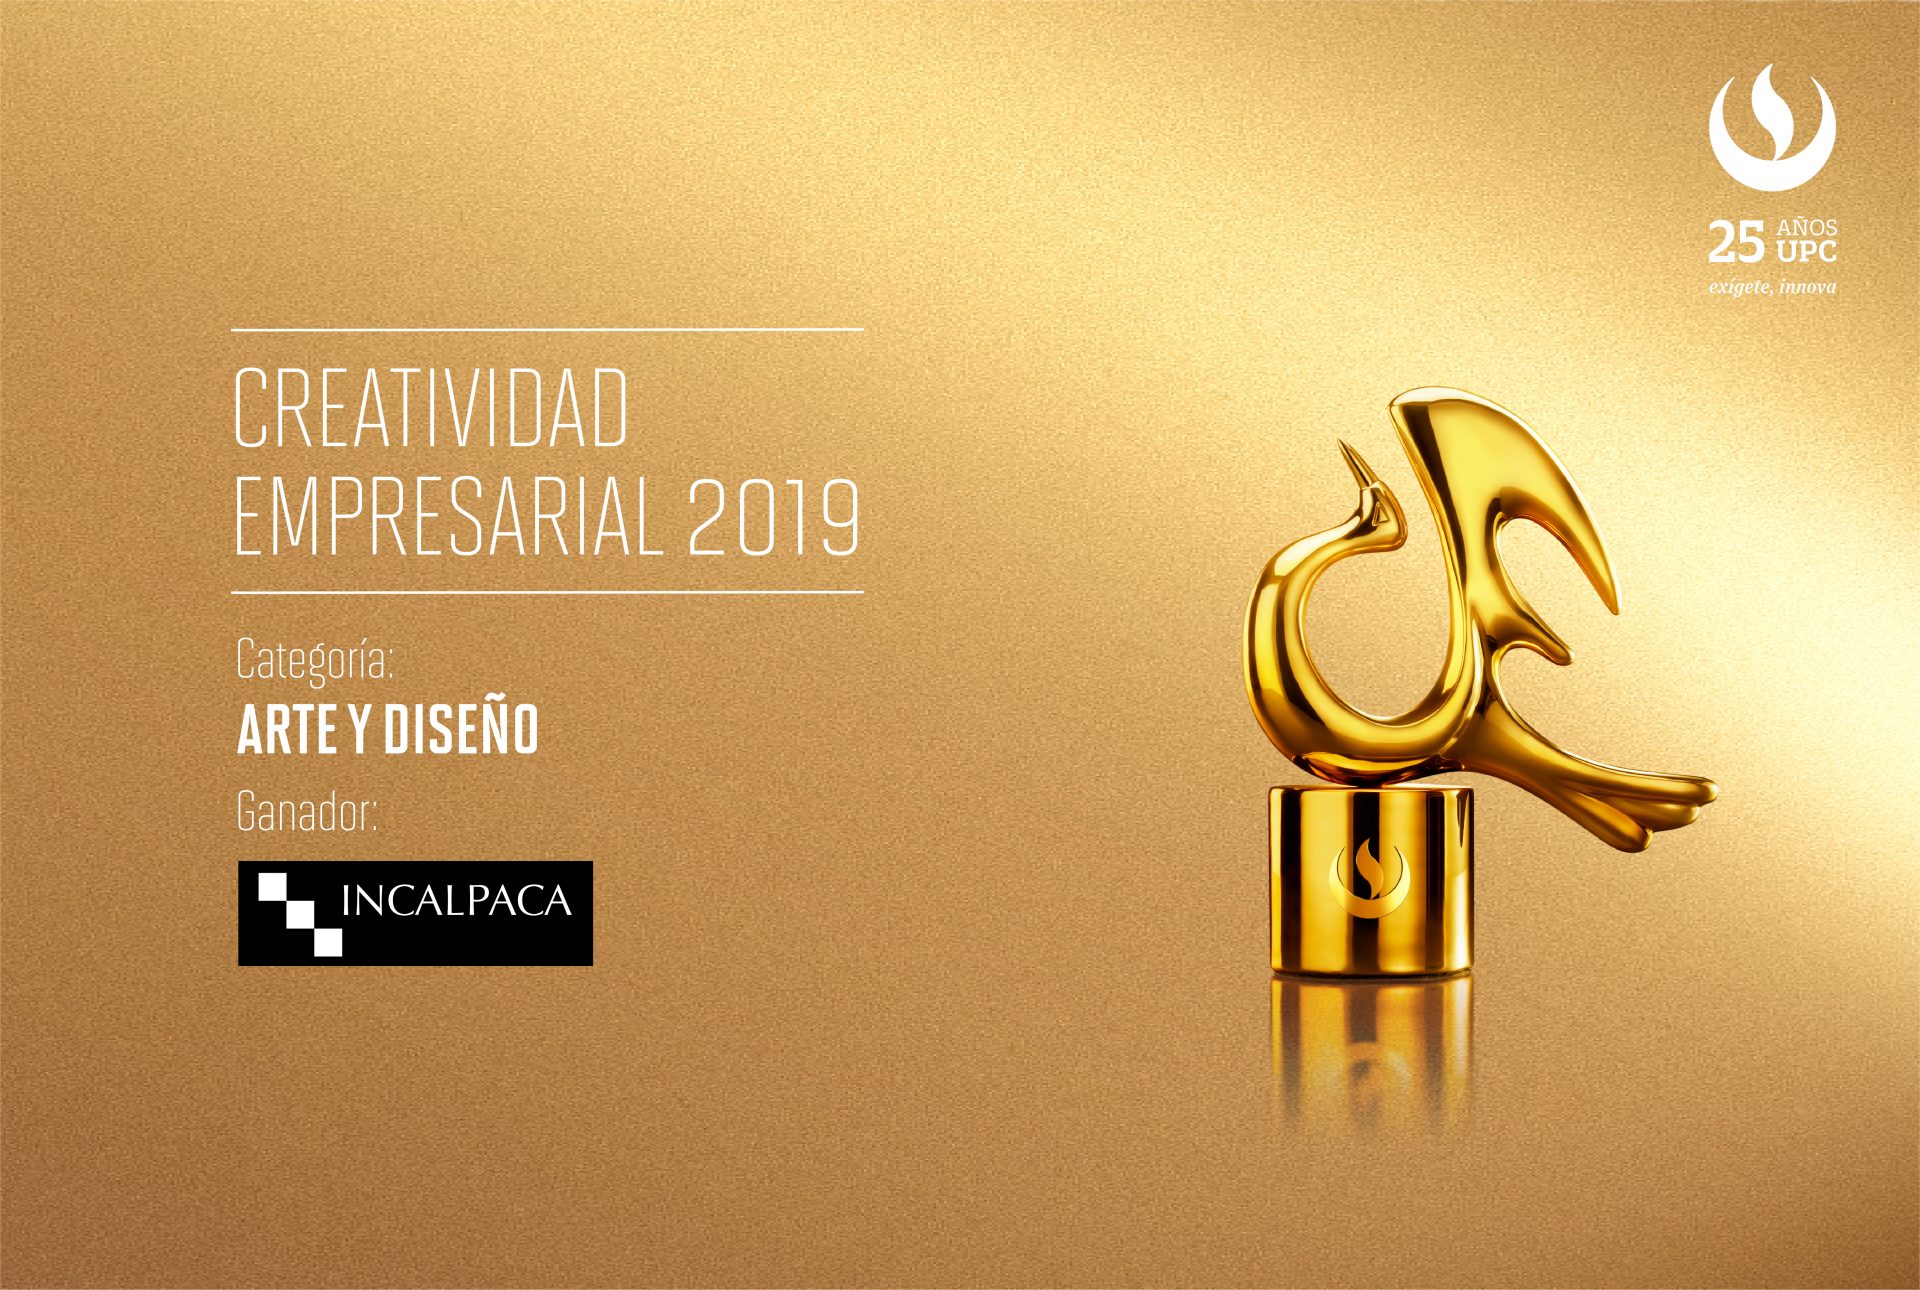 Creatividad Empresarial 2019: Incalpaca TX  fue el primer ganador de la noche en la categoría Arte y Diseño